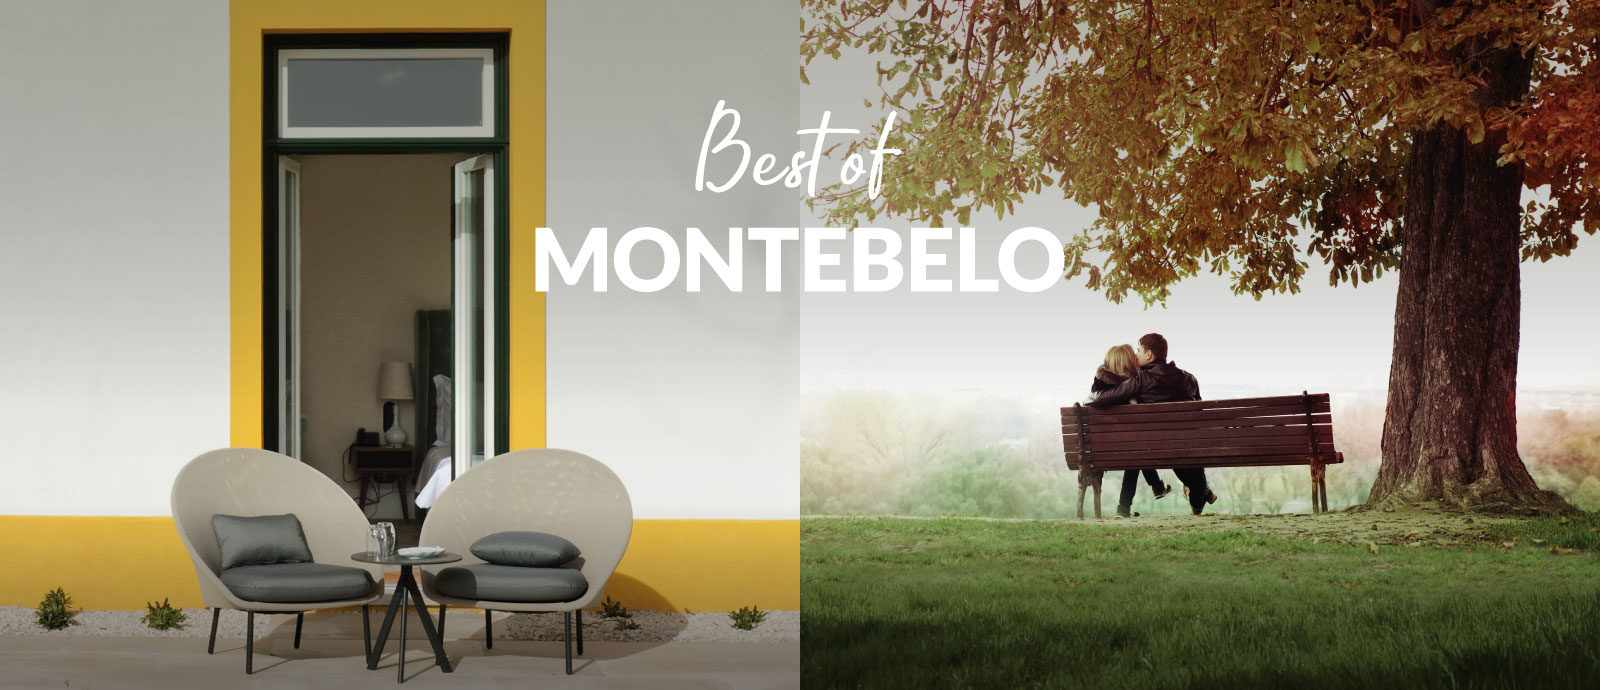 Best of Montebelo